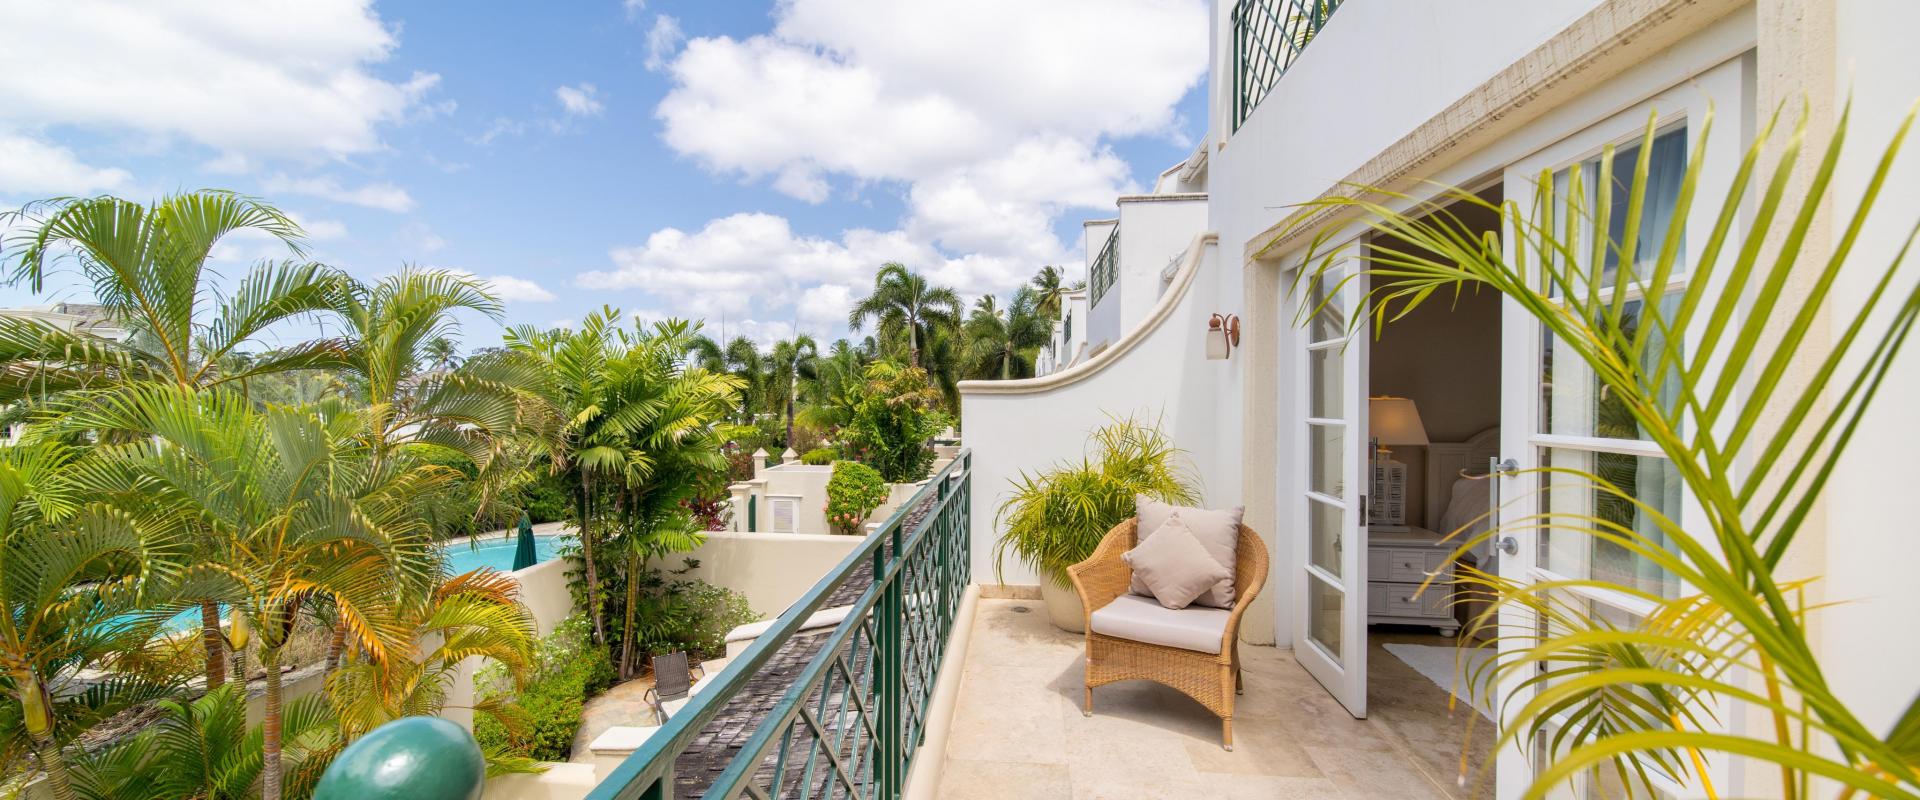 Coco Mullins Barbados Holiday Rental Home Bedroom 2 and 3 Patio